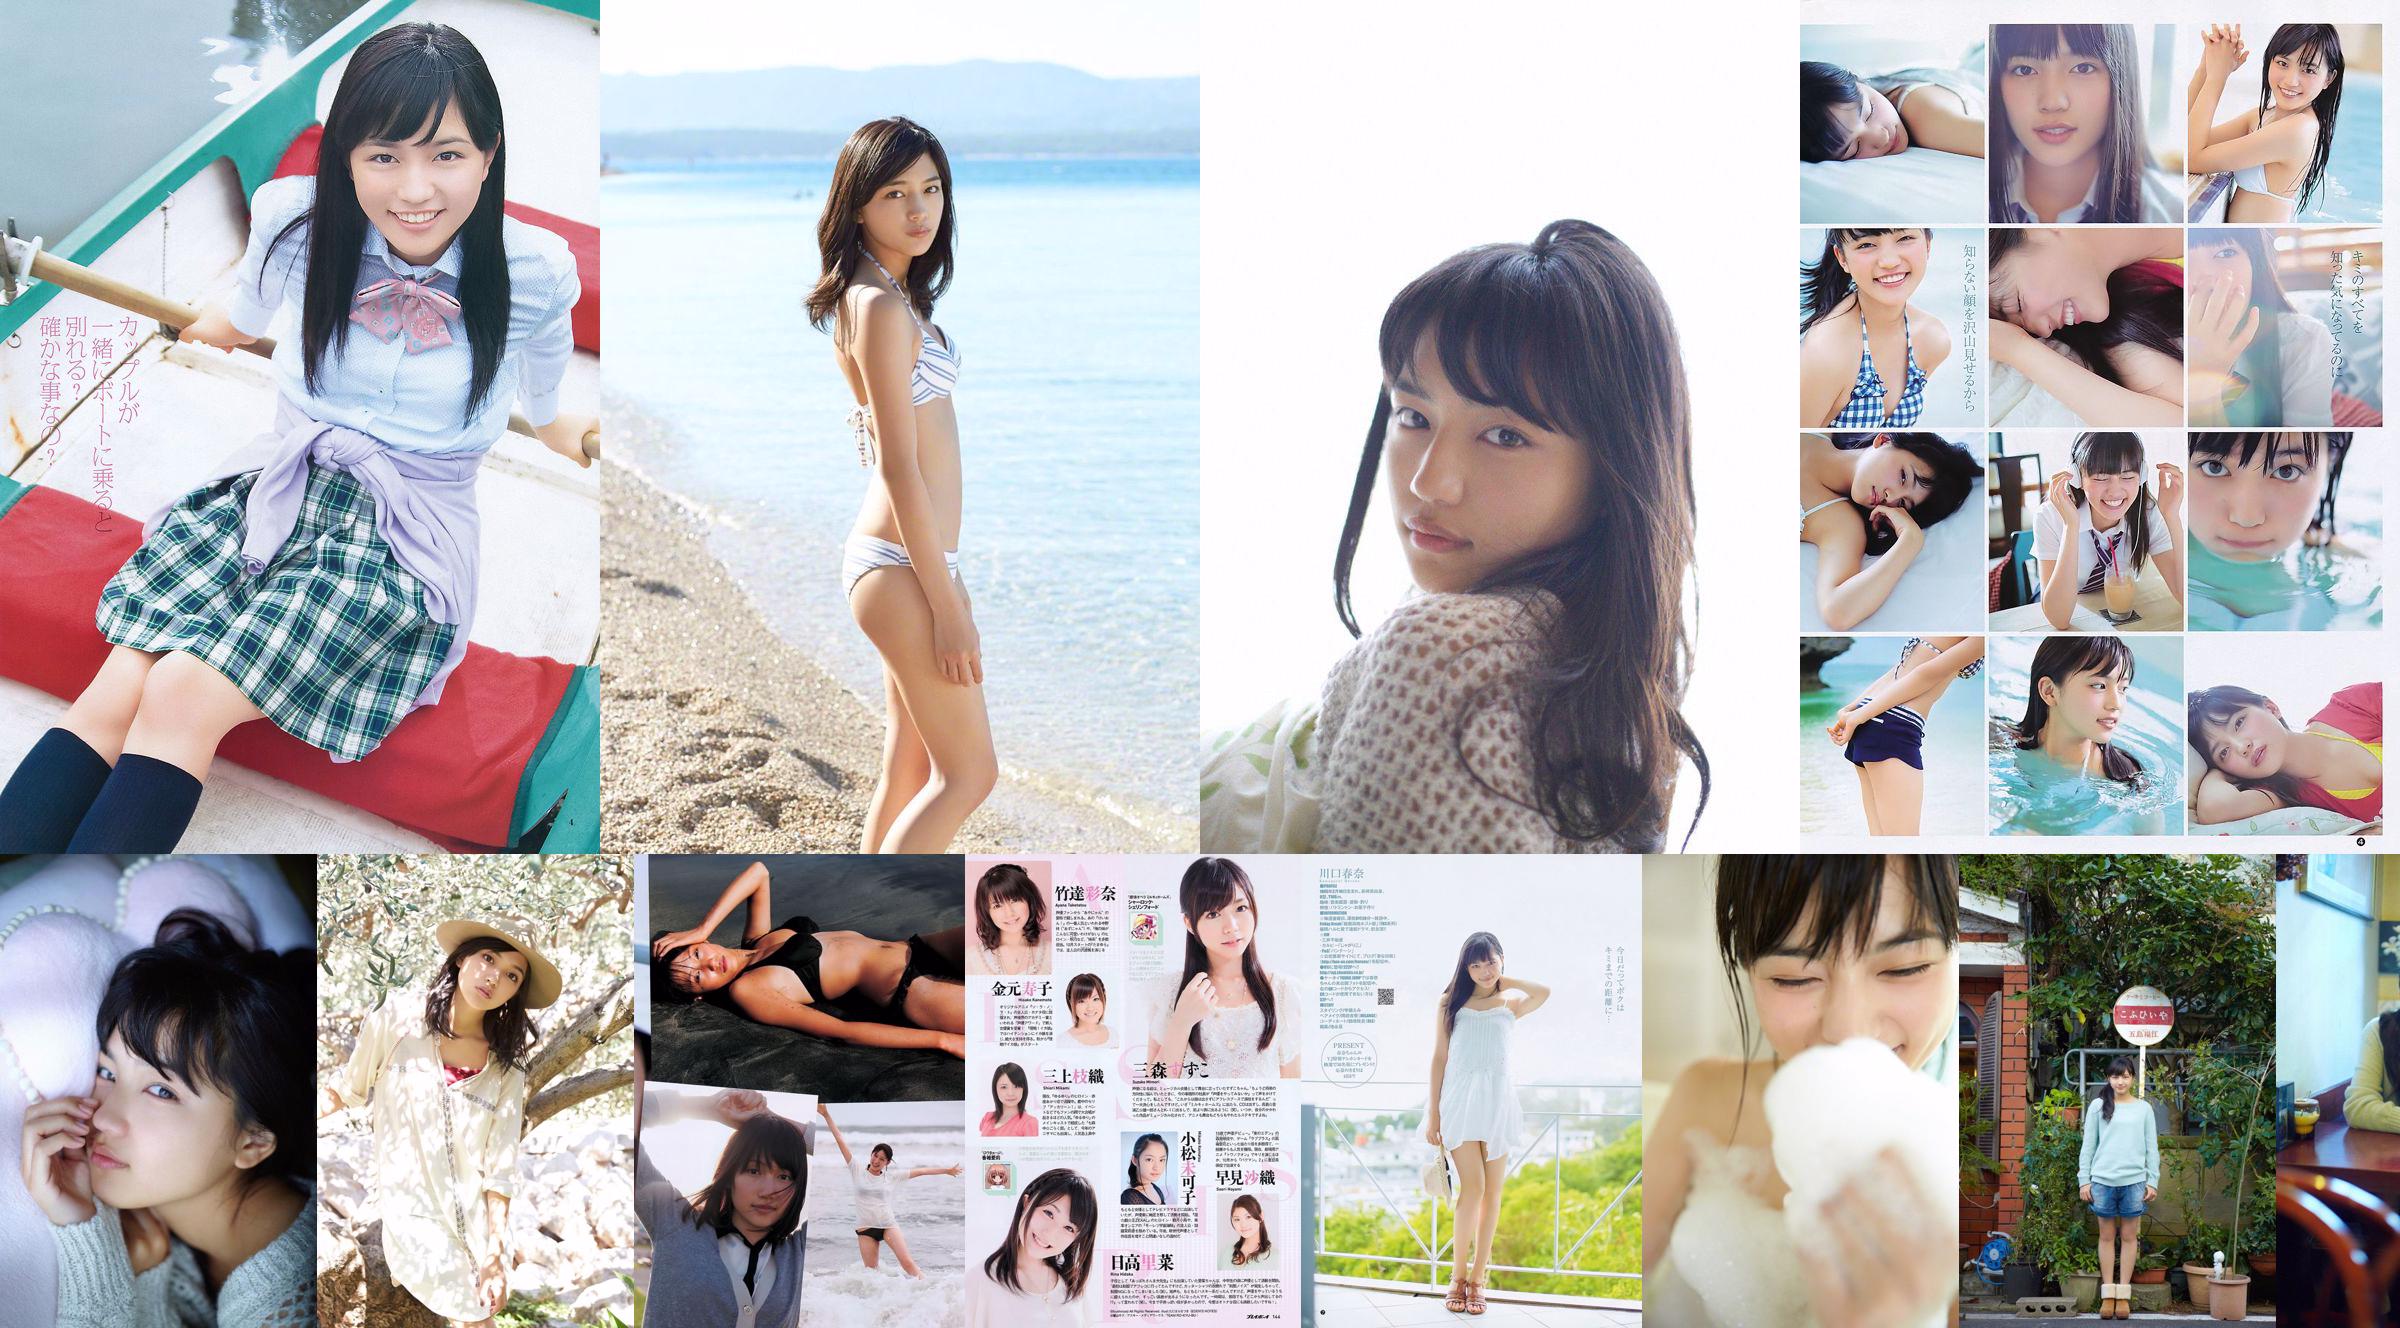 Haruna Kawaguchi Yumi Sugimoto [Weekly Young Jump] 2012 Nr. 18 Foto No.859c4e Seite 1